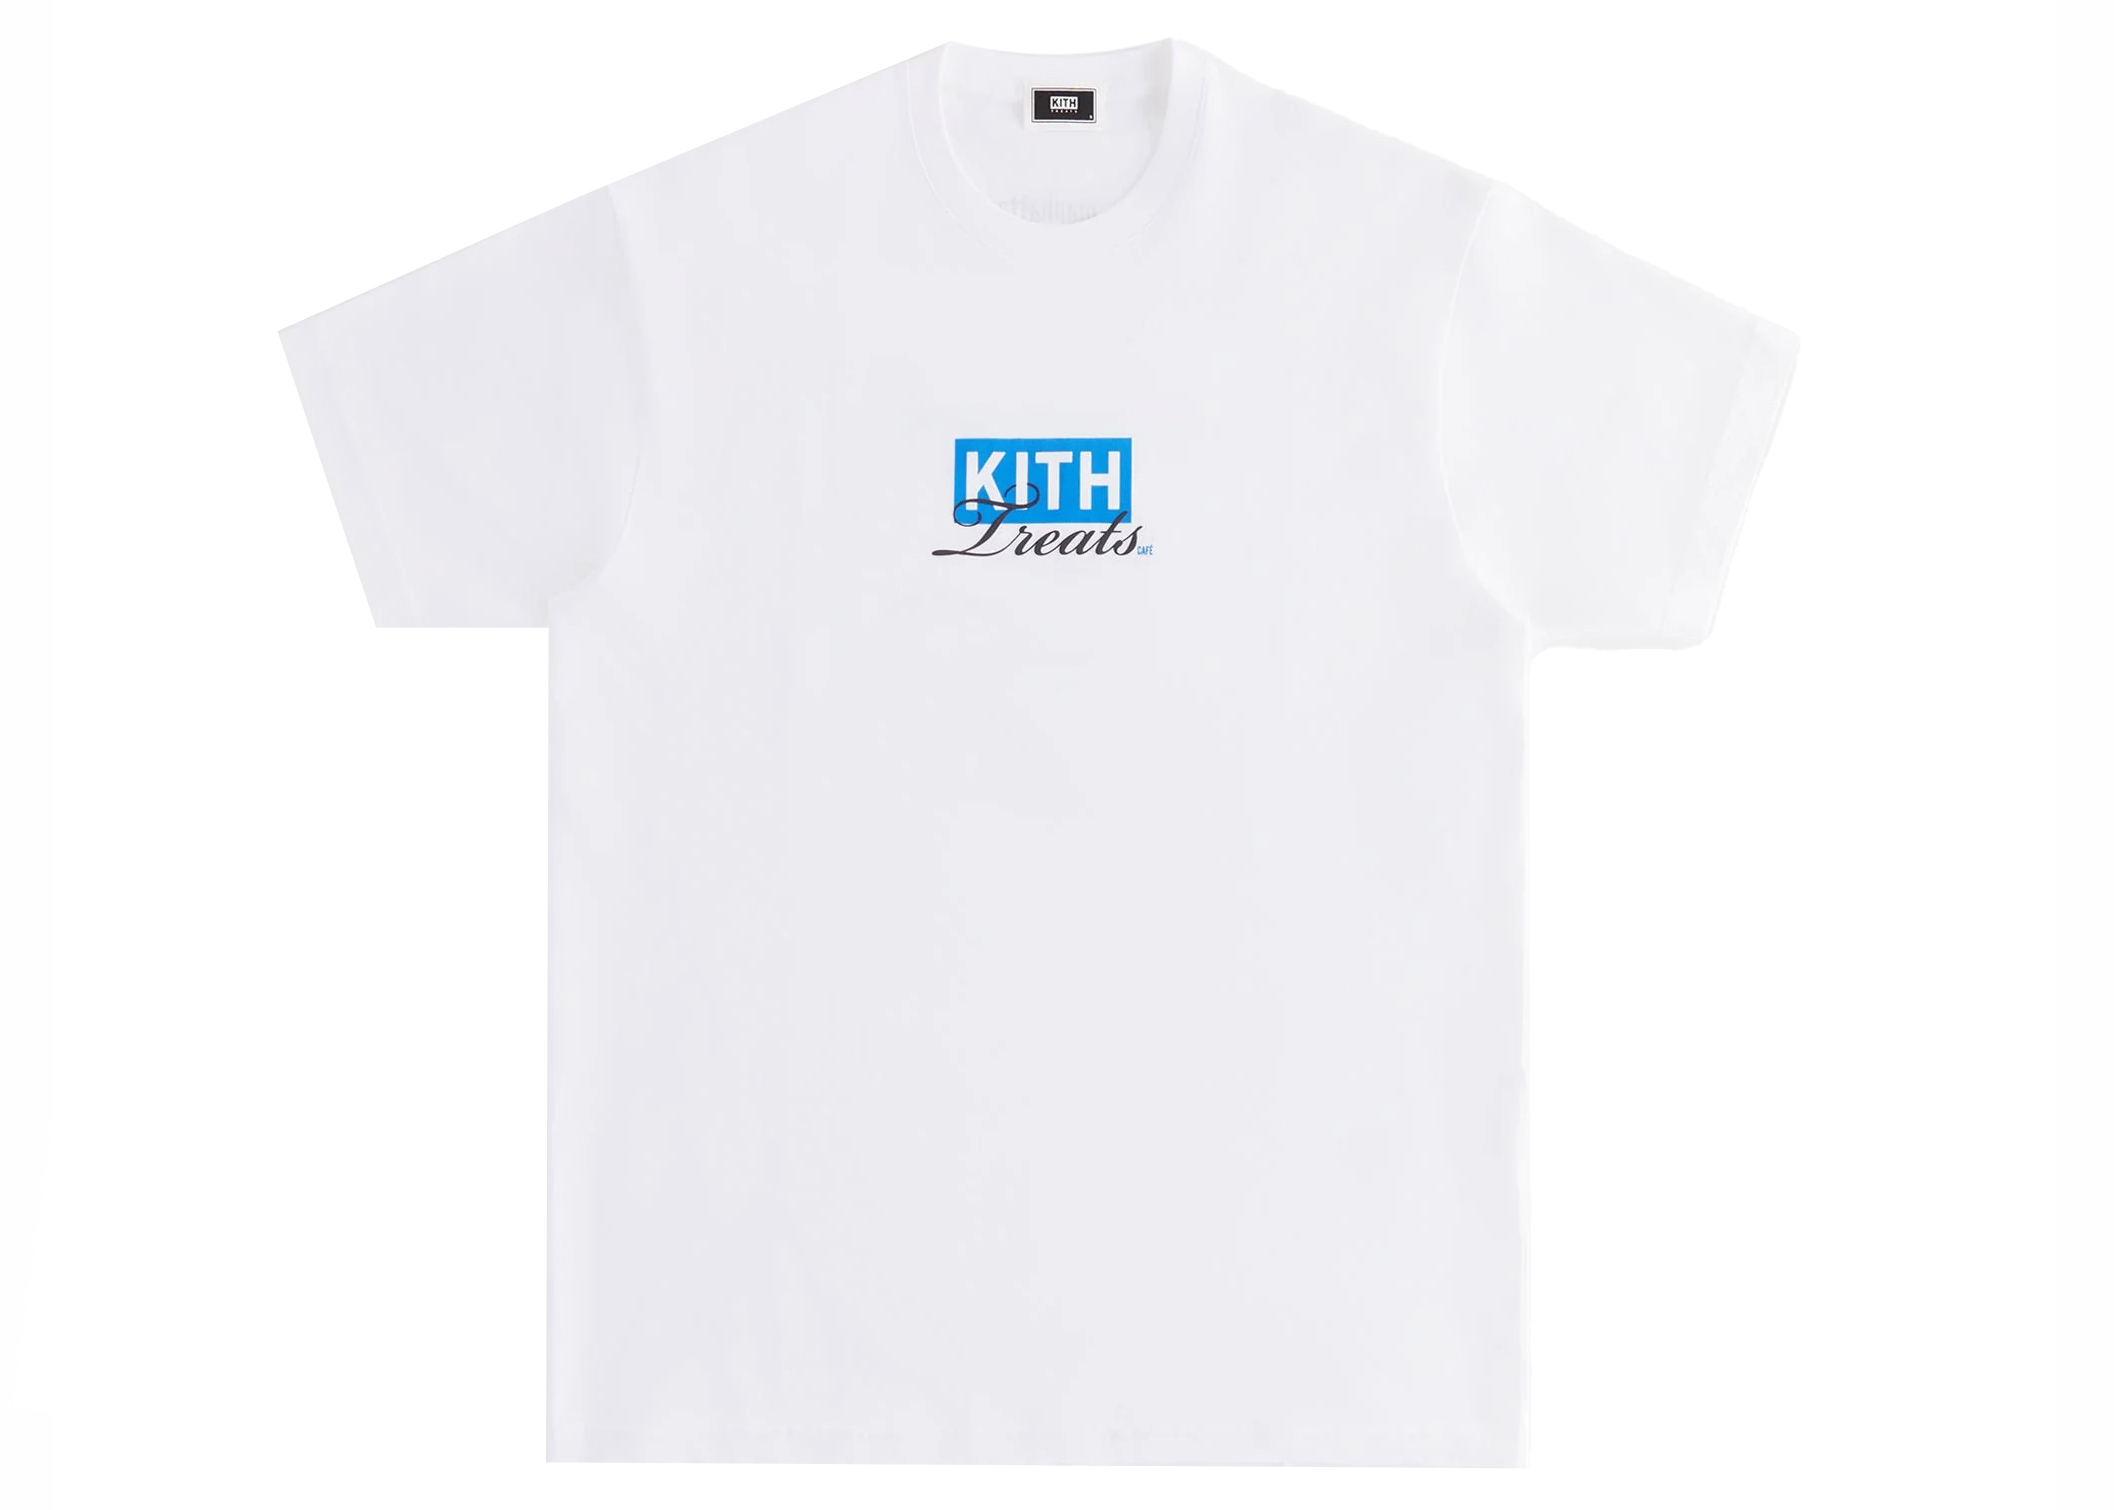 KITH Kith Treats New York Café Tee